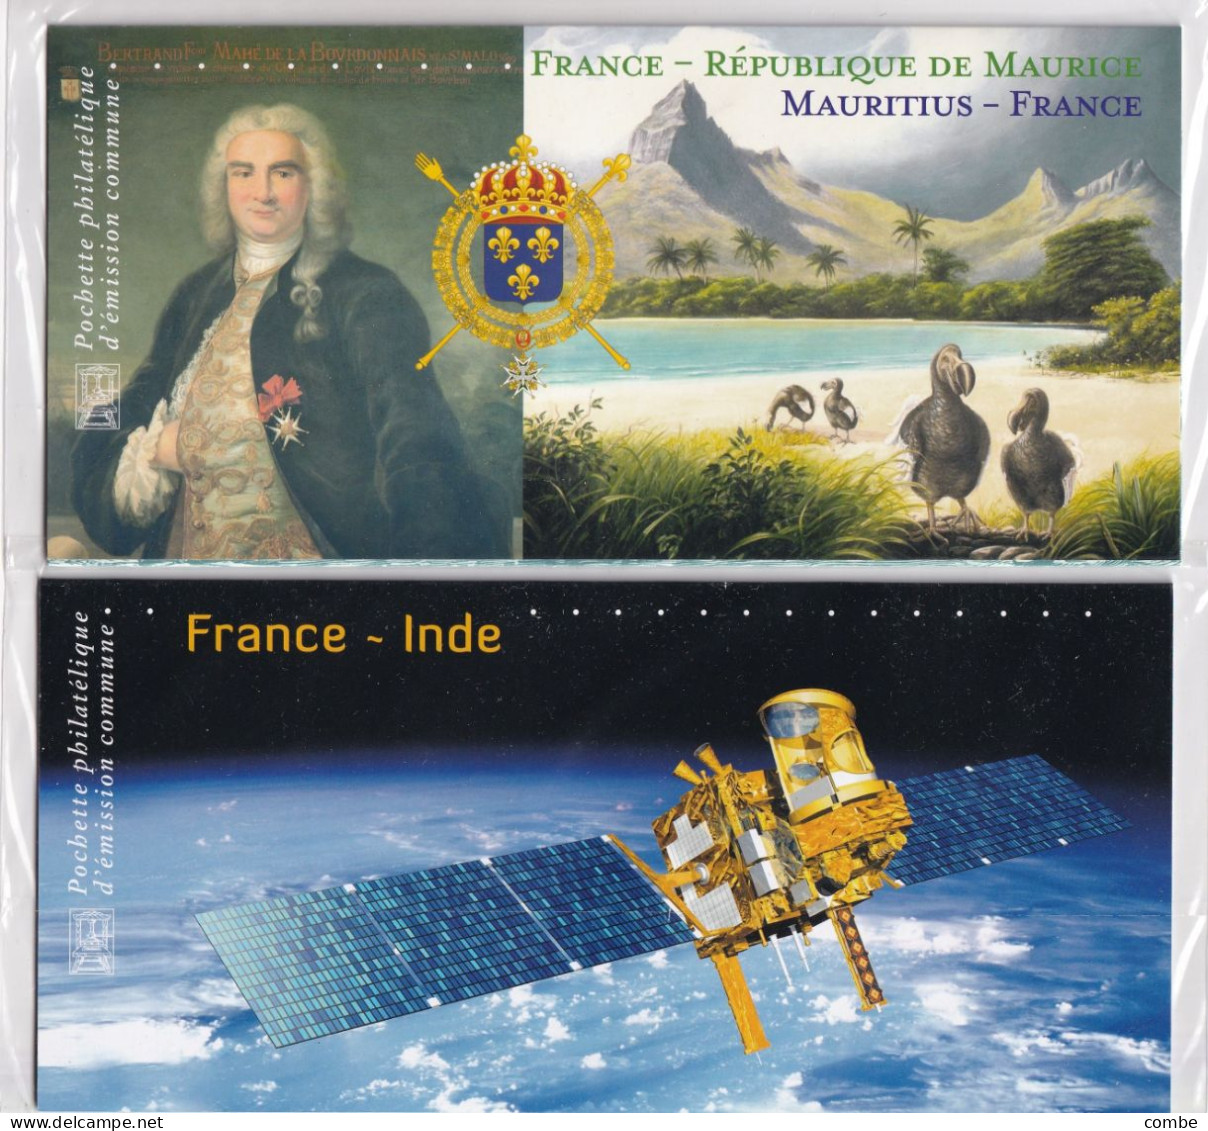 2 BLOCS SOUVENIR. NEUF SOUS BLISTER. FRANCE-INDE 2010, FRANCE-MAURICE 2015 - Souvenir Blocks